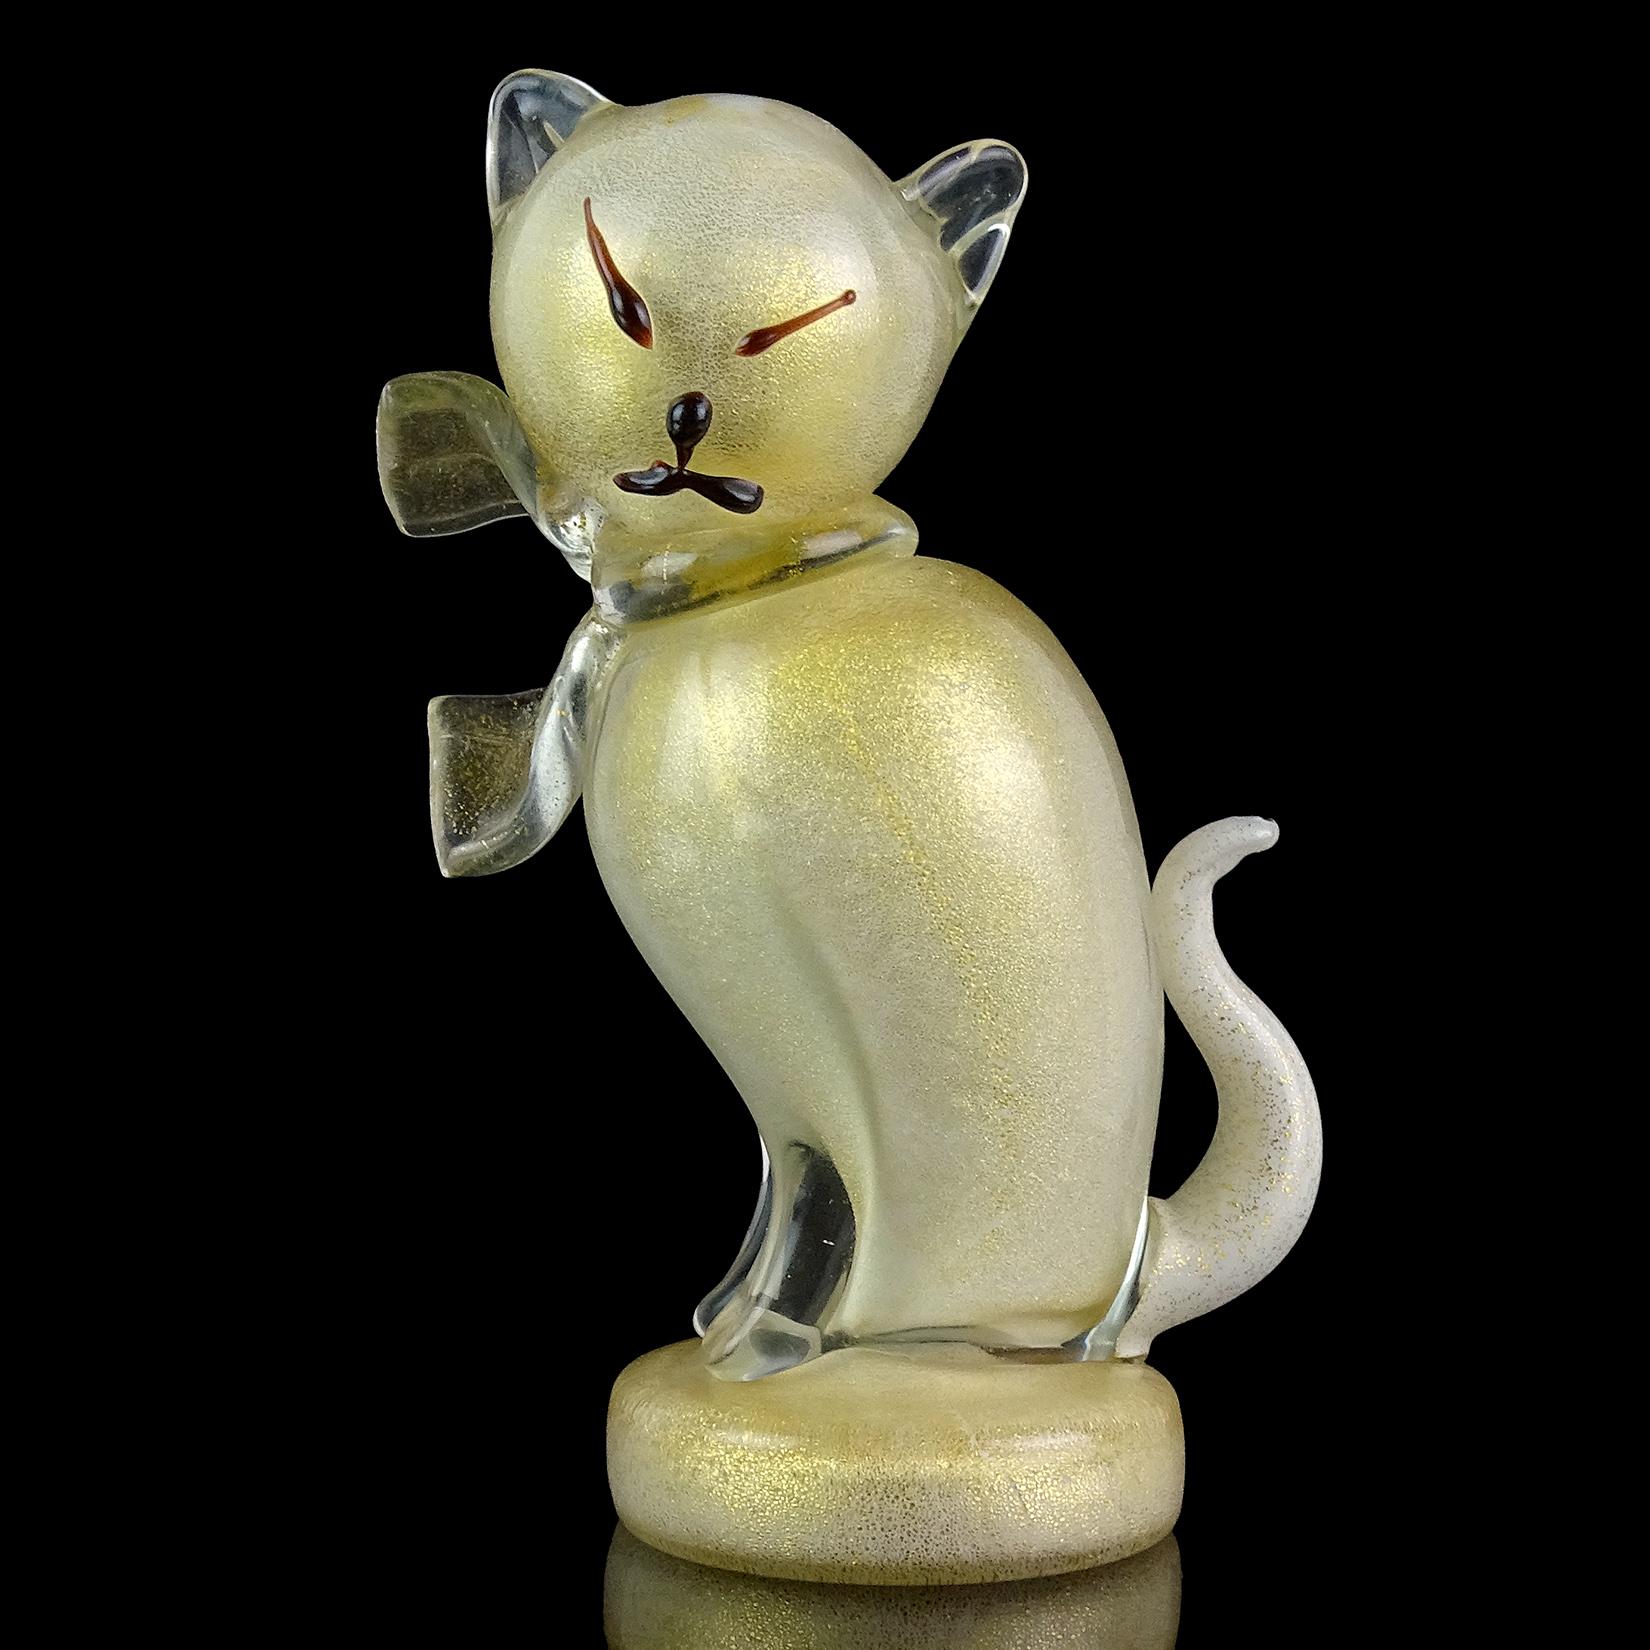 Schöne Vintage Murano mundgeblasenen weißen und goldenen Flecken italienische Kunst Glas Kitty Katze Skulptur figurine. Dokumentiert für den Designer Alfredo Barbini. Das Stück ist reichlich mit Blattgold überzogen und hat eine klare Schleife um den